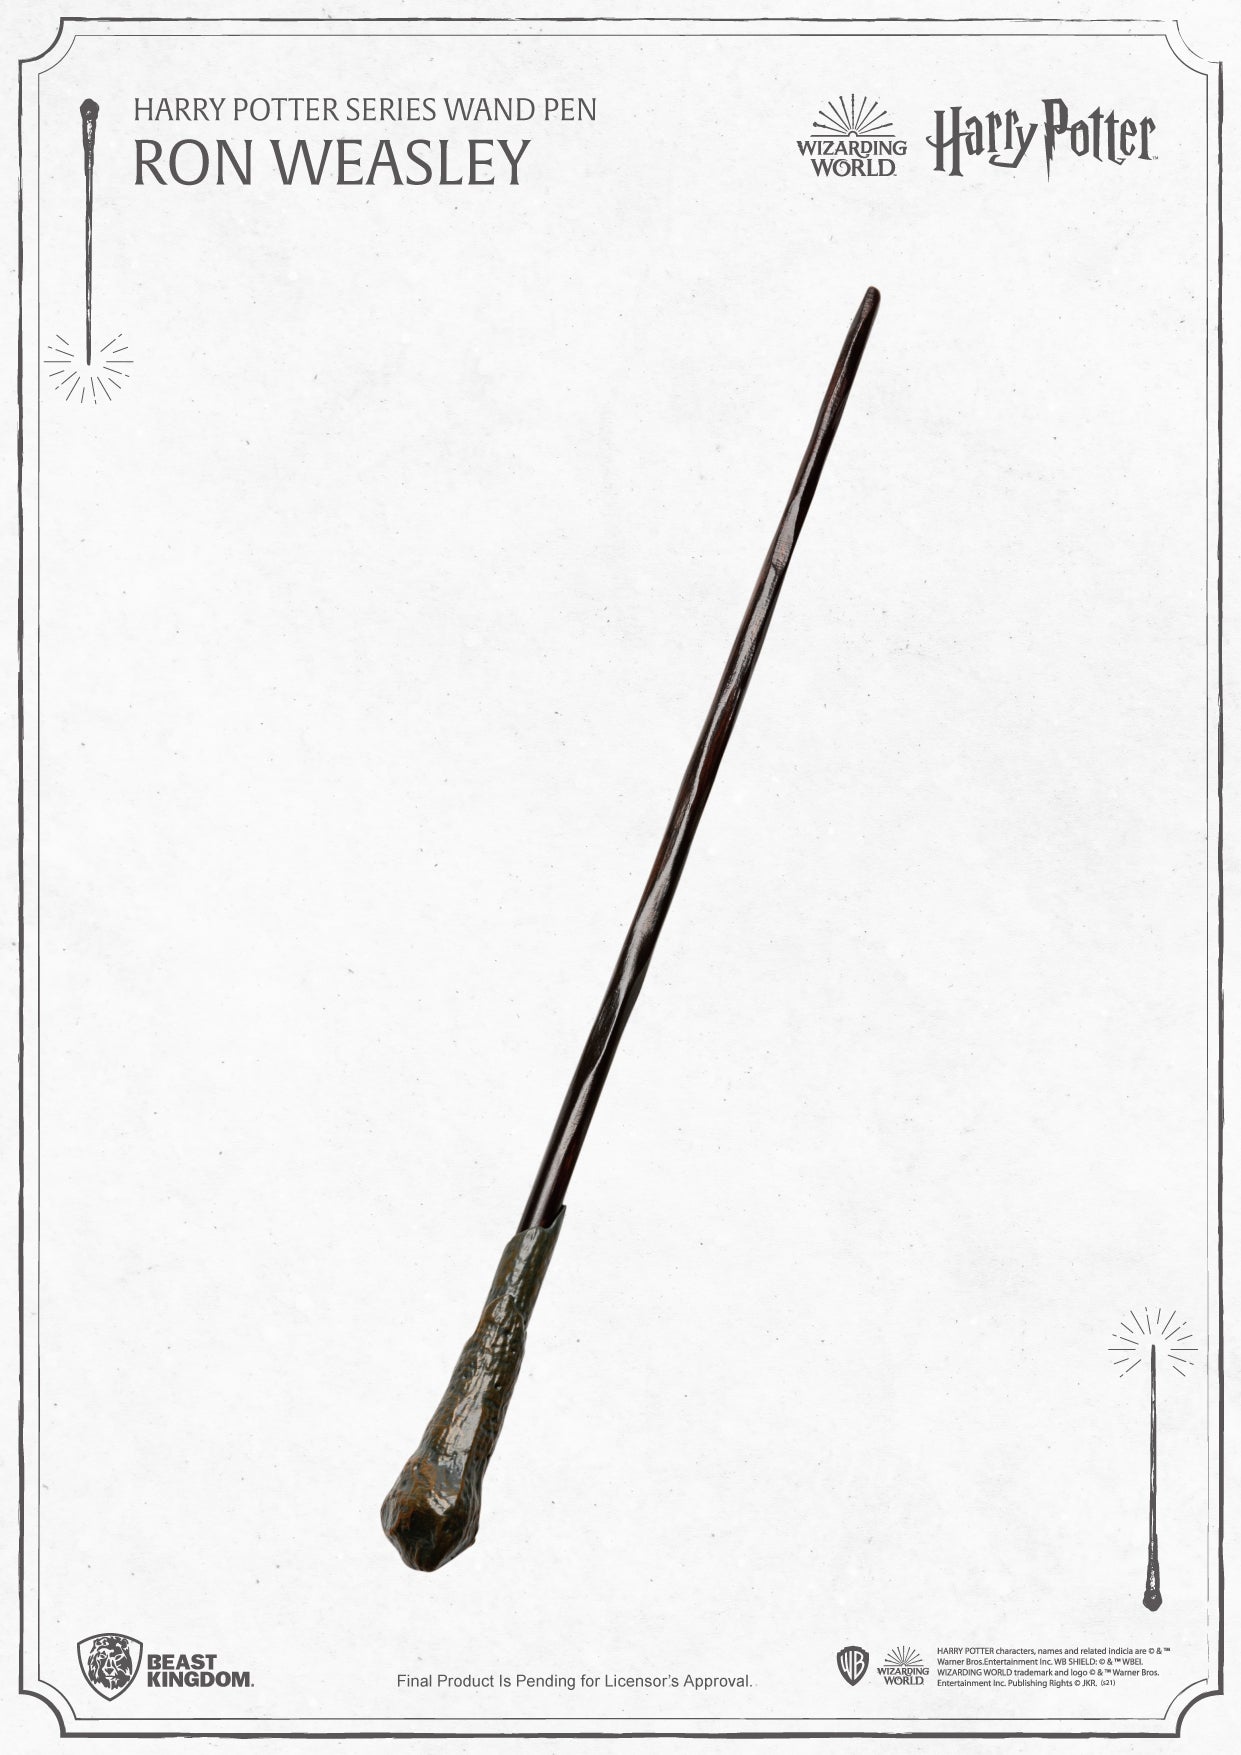 Harry Potter Series Wand Pen Ron Weasley PEN-001-4